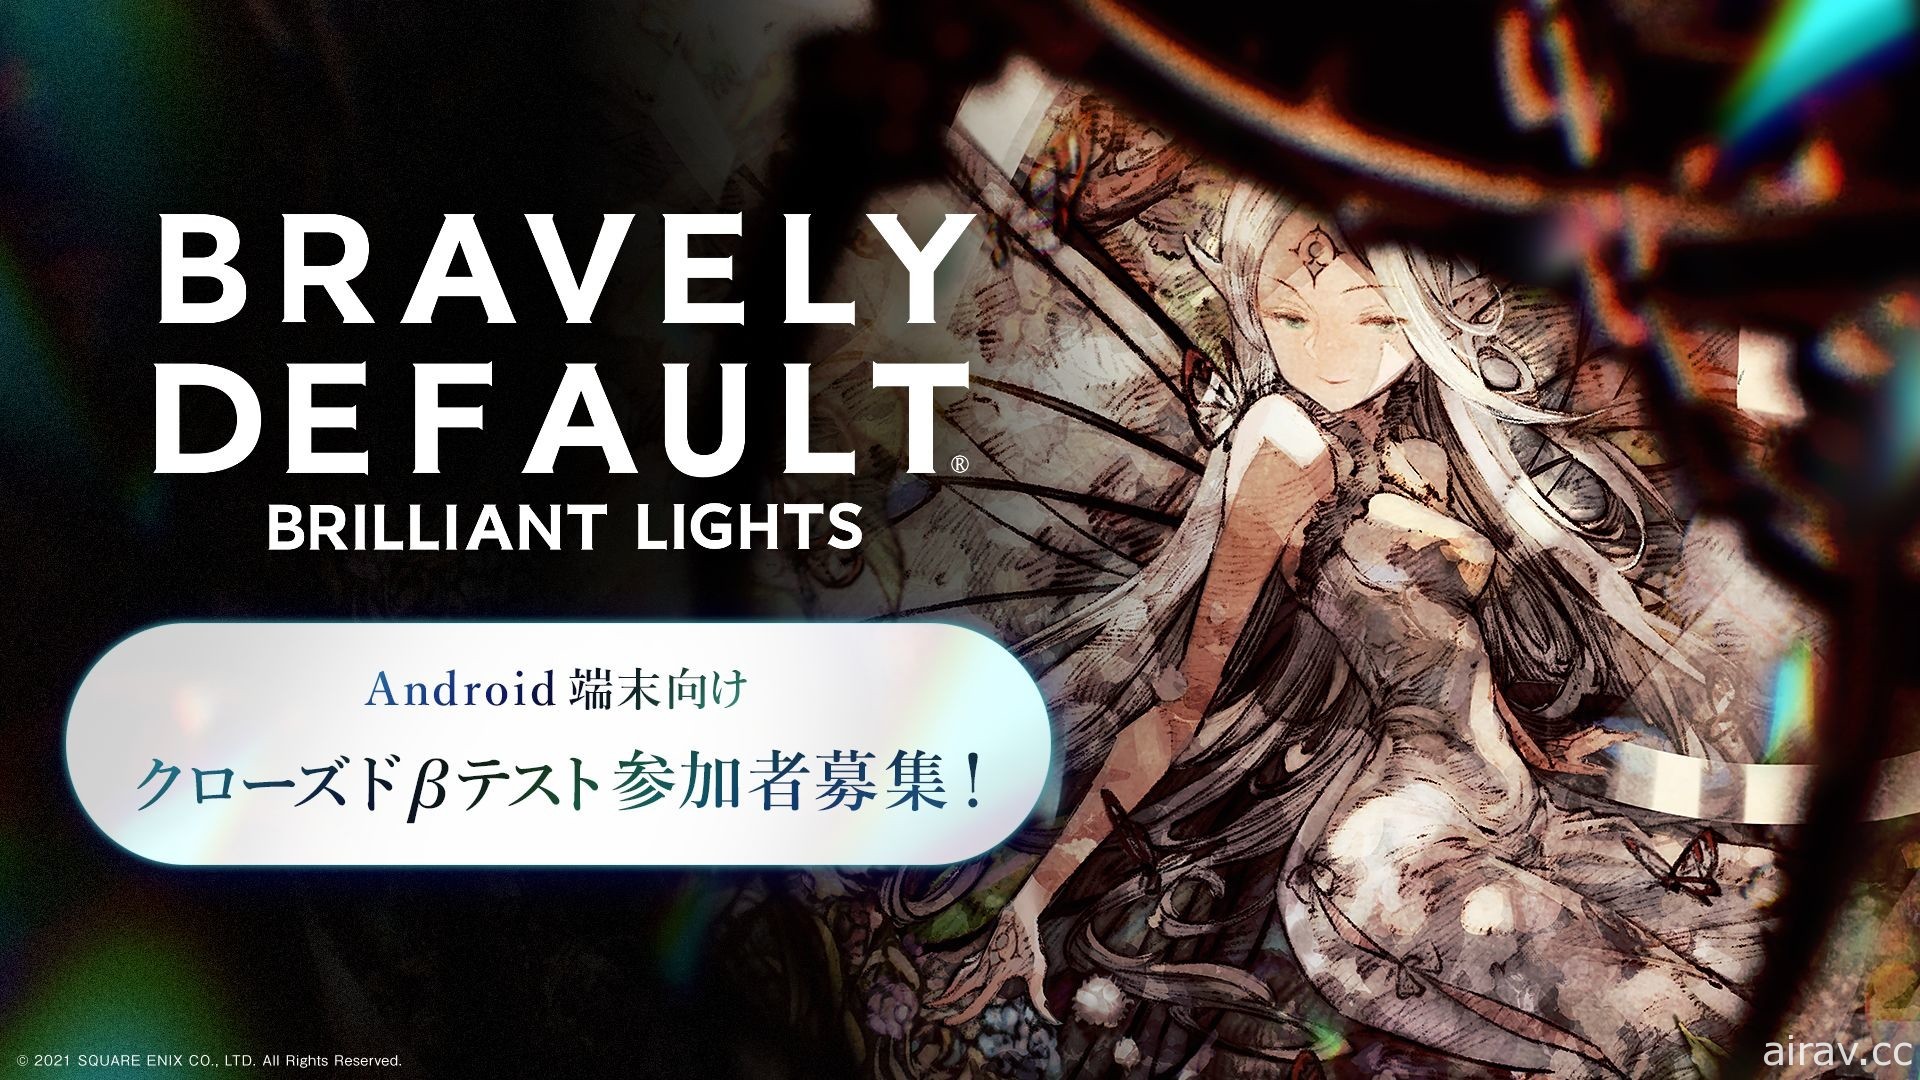 《BRAVELY DEFAULT BRILLIANT LIGHTS》即日起於日本招募 CBT 測試玩家